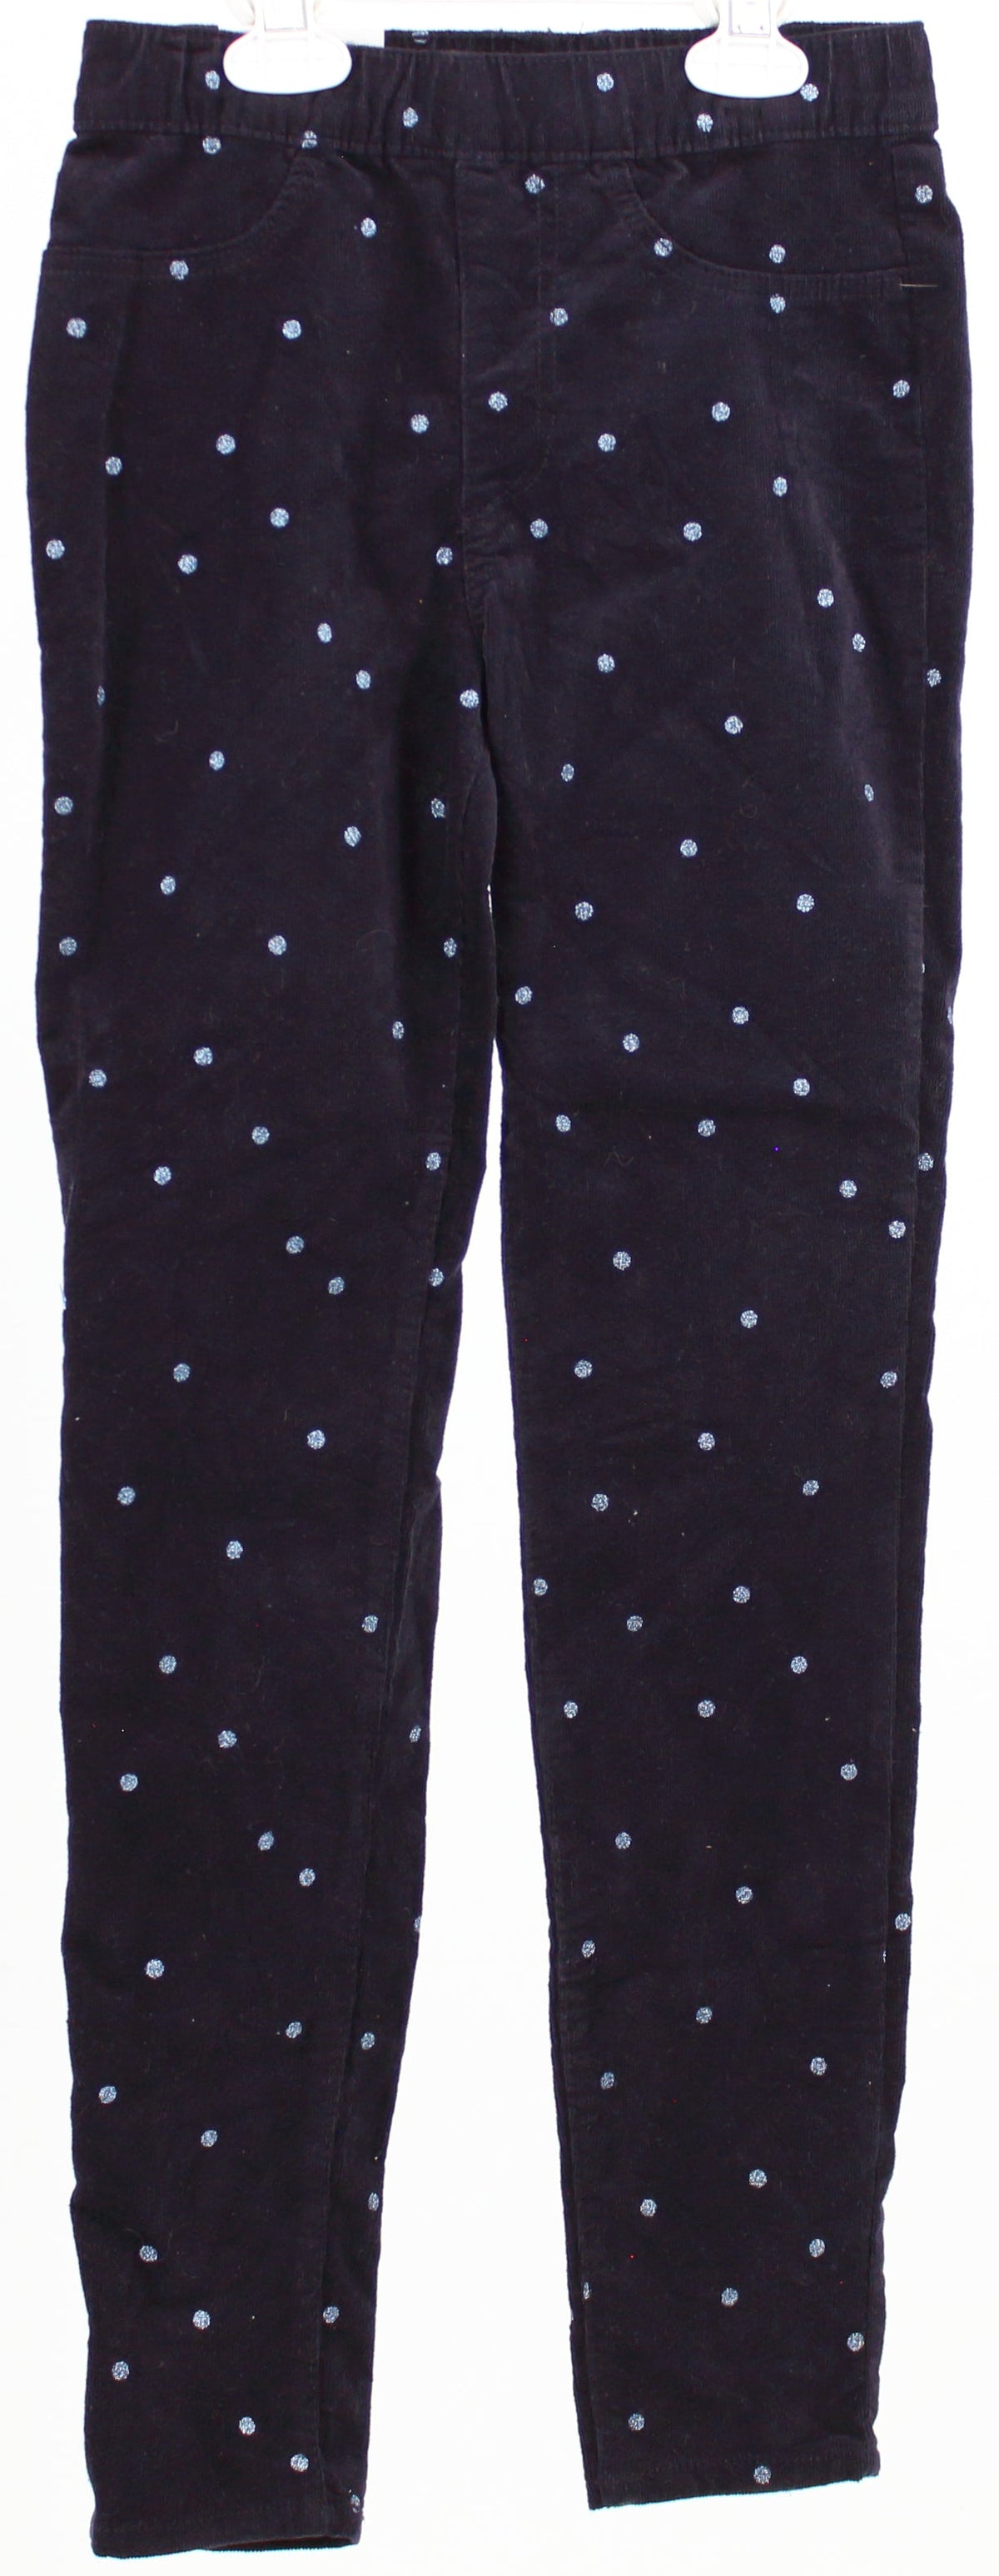 H&M Dots Glitter Patterned Navy Blue Corduroy Pants